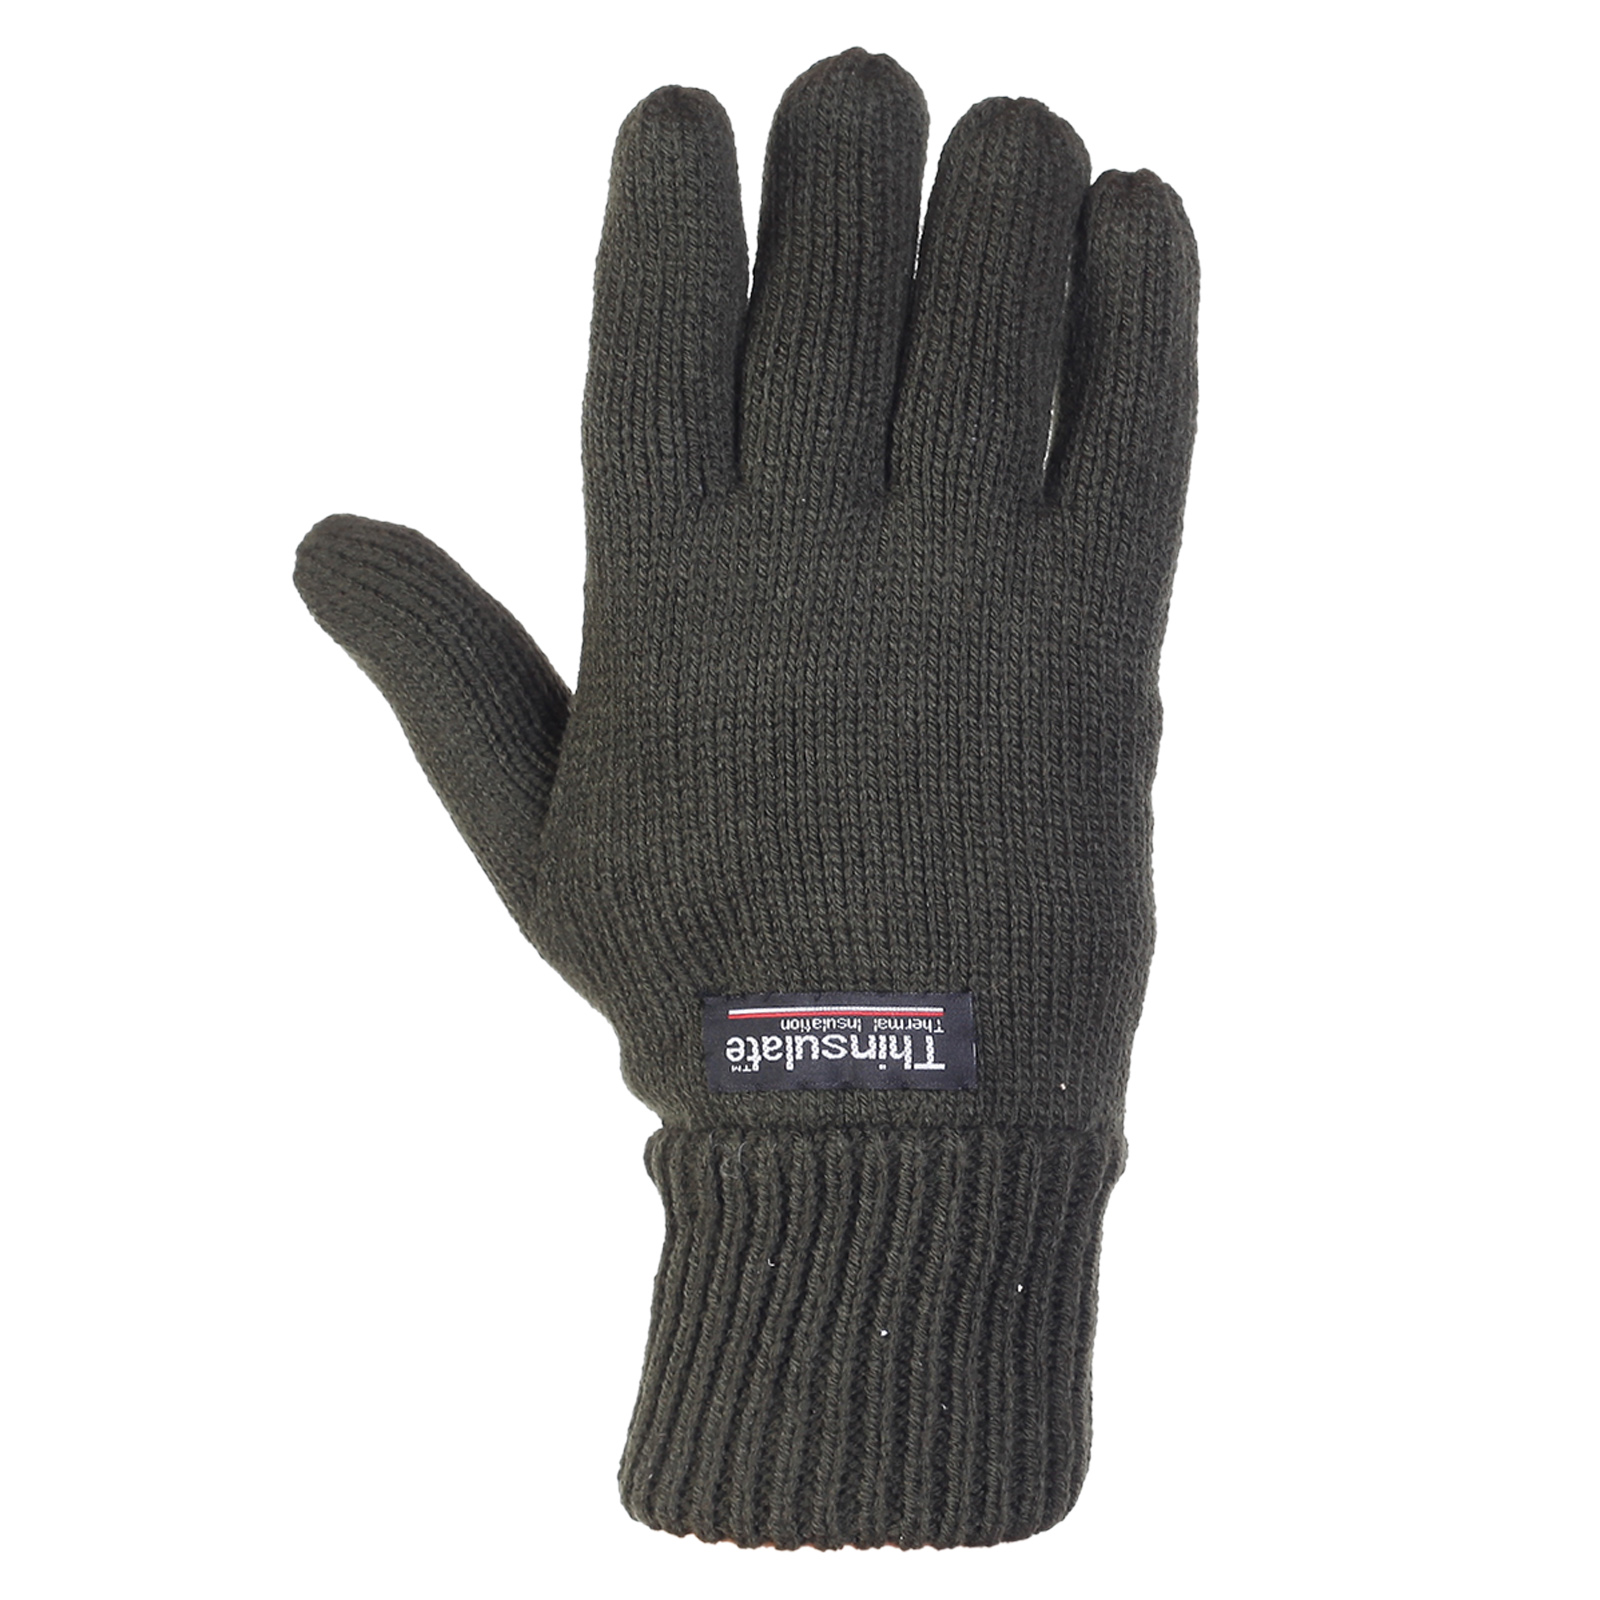 Заказать в интернет магазине вязаные мужские перчатки на зиму